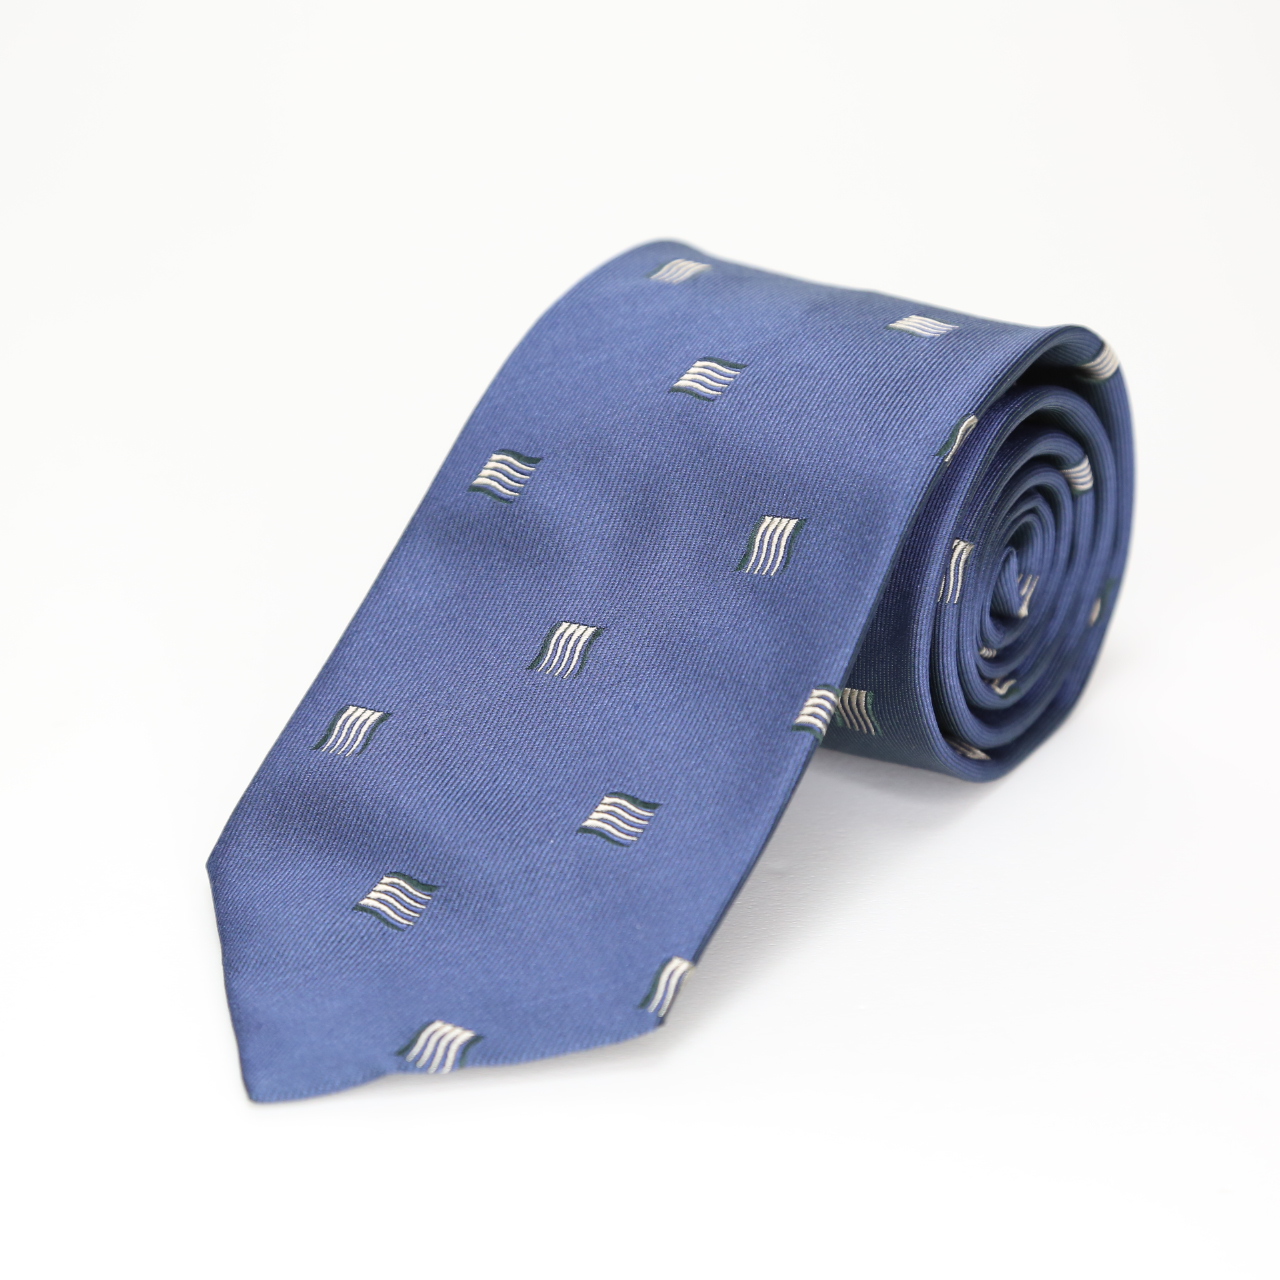 イタリア生地ネクタイ  小紋  ブルー  FATTURA  日本製  ヴィンテージ調  メンズファッション  ネクタイ  コーデ